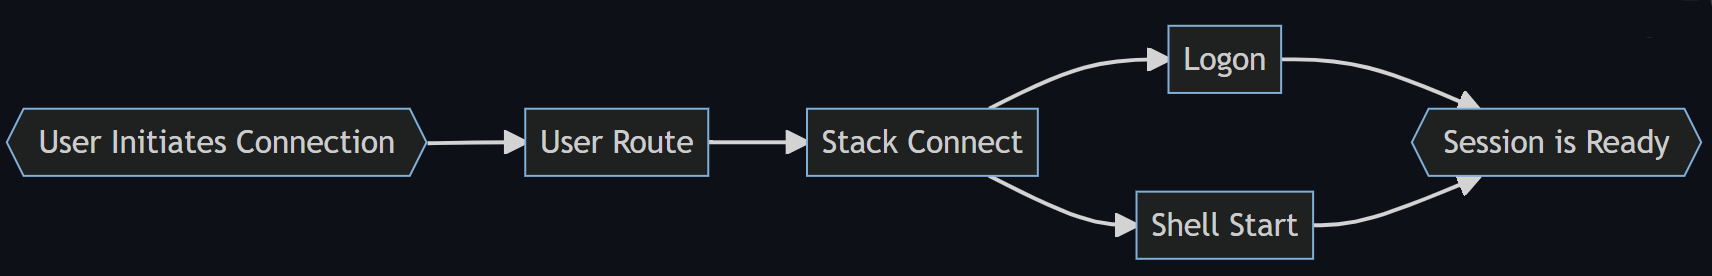 Un organigramme montrant les quatre étapes du processus de connexion : Route de l’utilisateur, Pile connectée, Connexion, et Démarrage du Shell, jusqu’à Shell prêt.